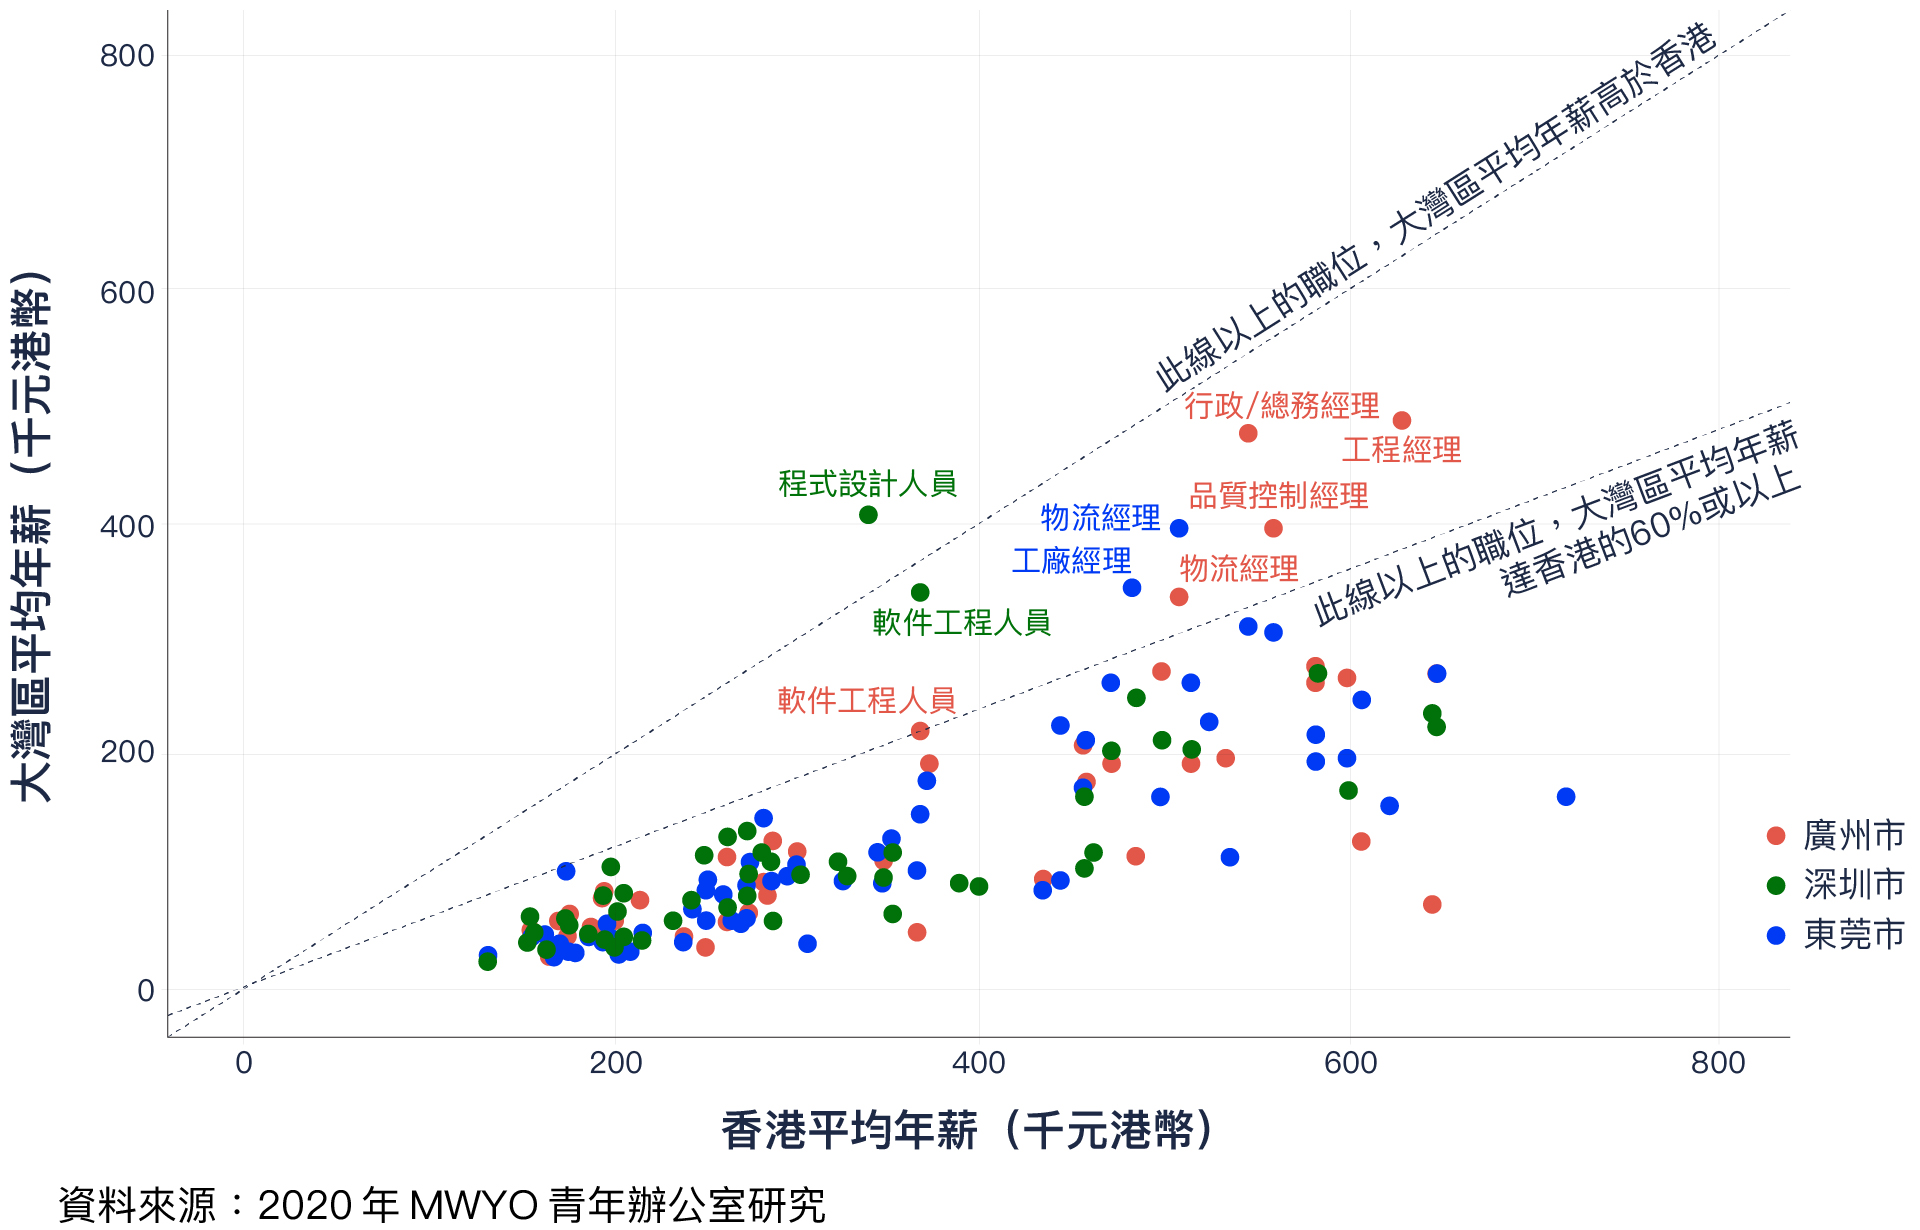 香港和廣州、東莞和深圳職位平均年薪散布圖